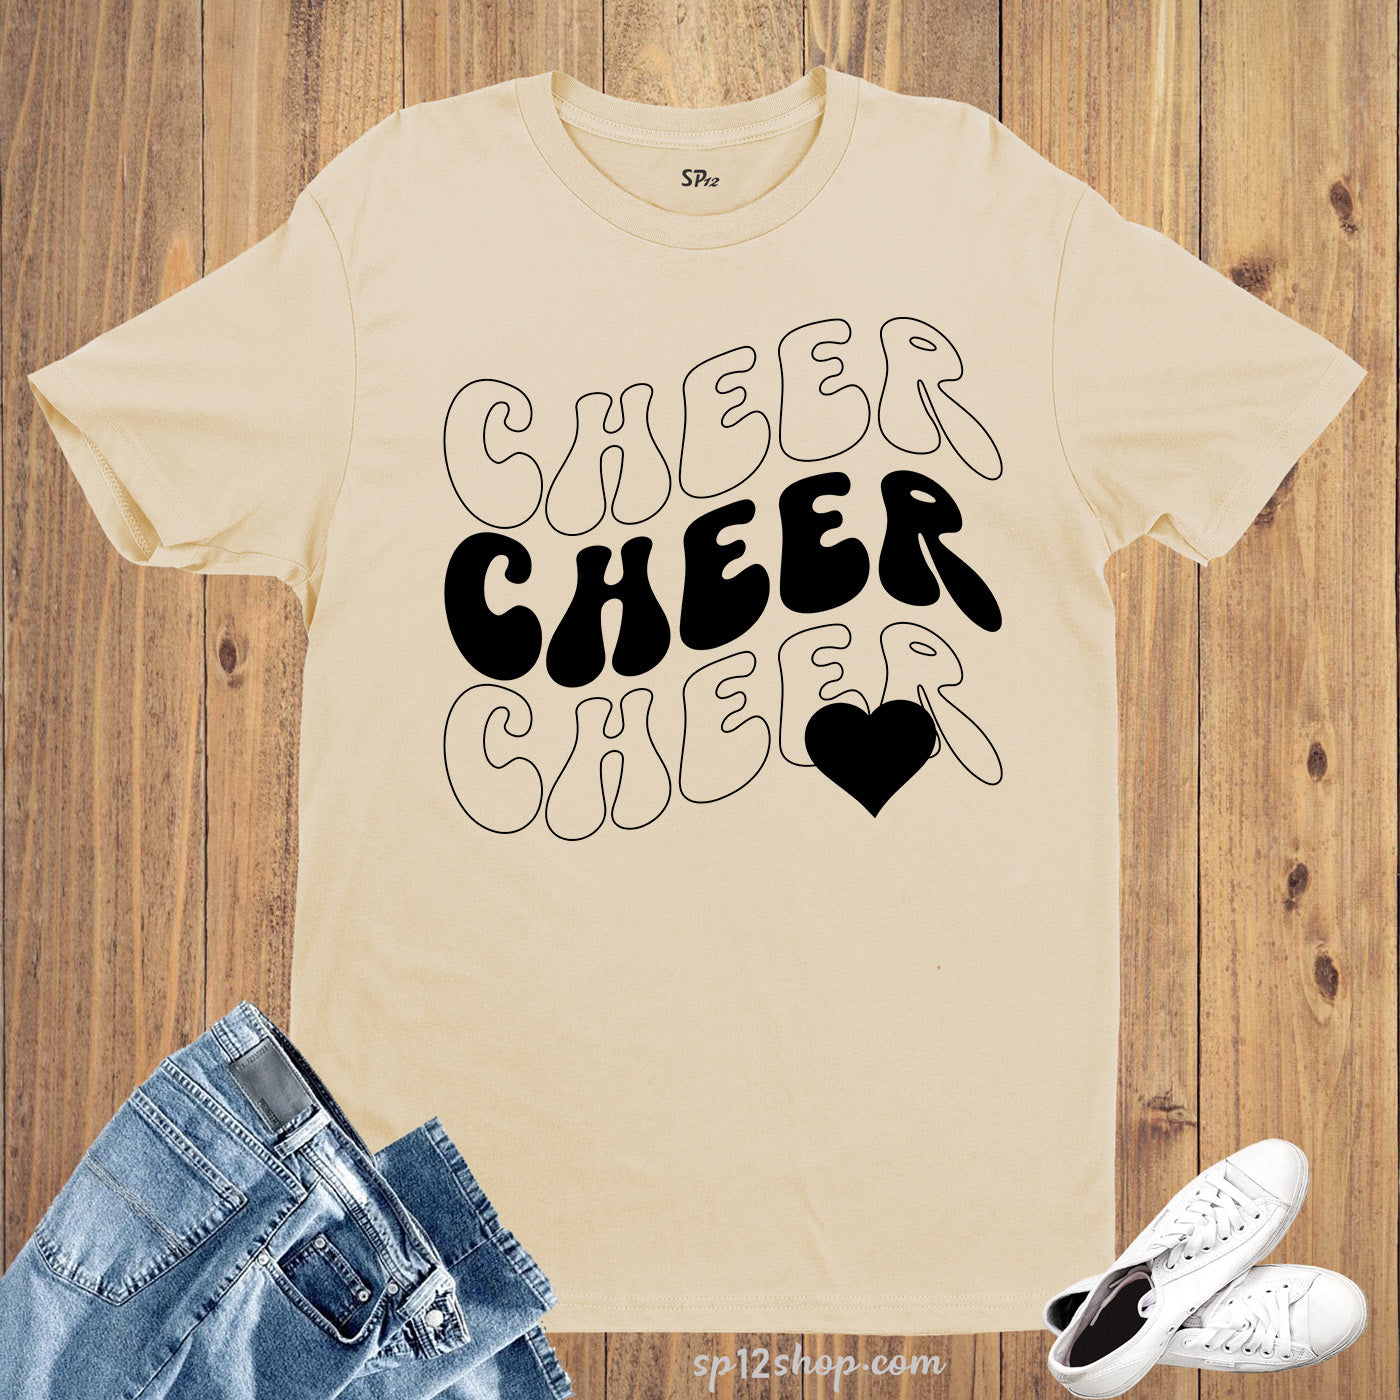 Cheer T-Shirt